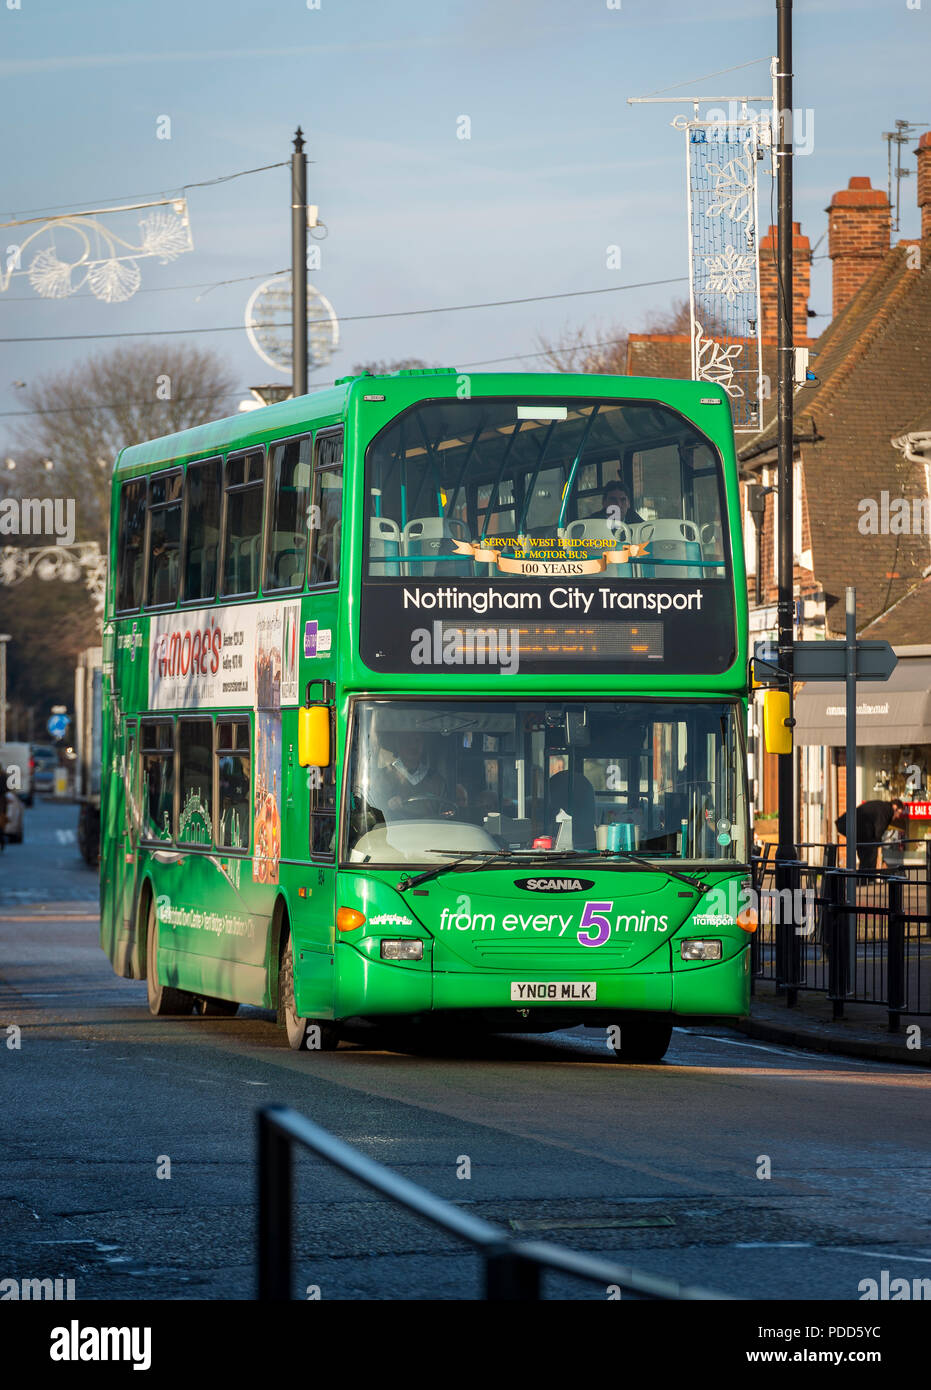 Nottingham City Transport double decker bus se déplaçant le long d'une rue dans le Nottinghamshire, Angleterre. Banque D'Images